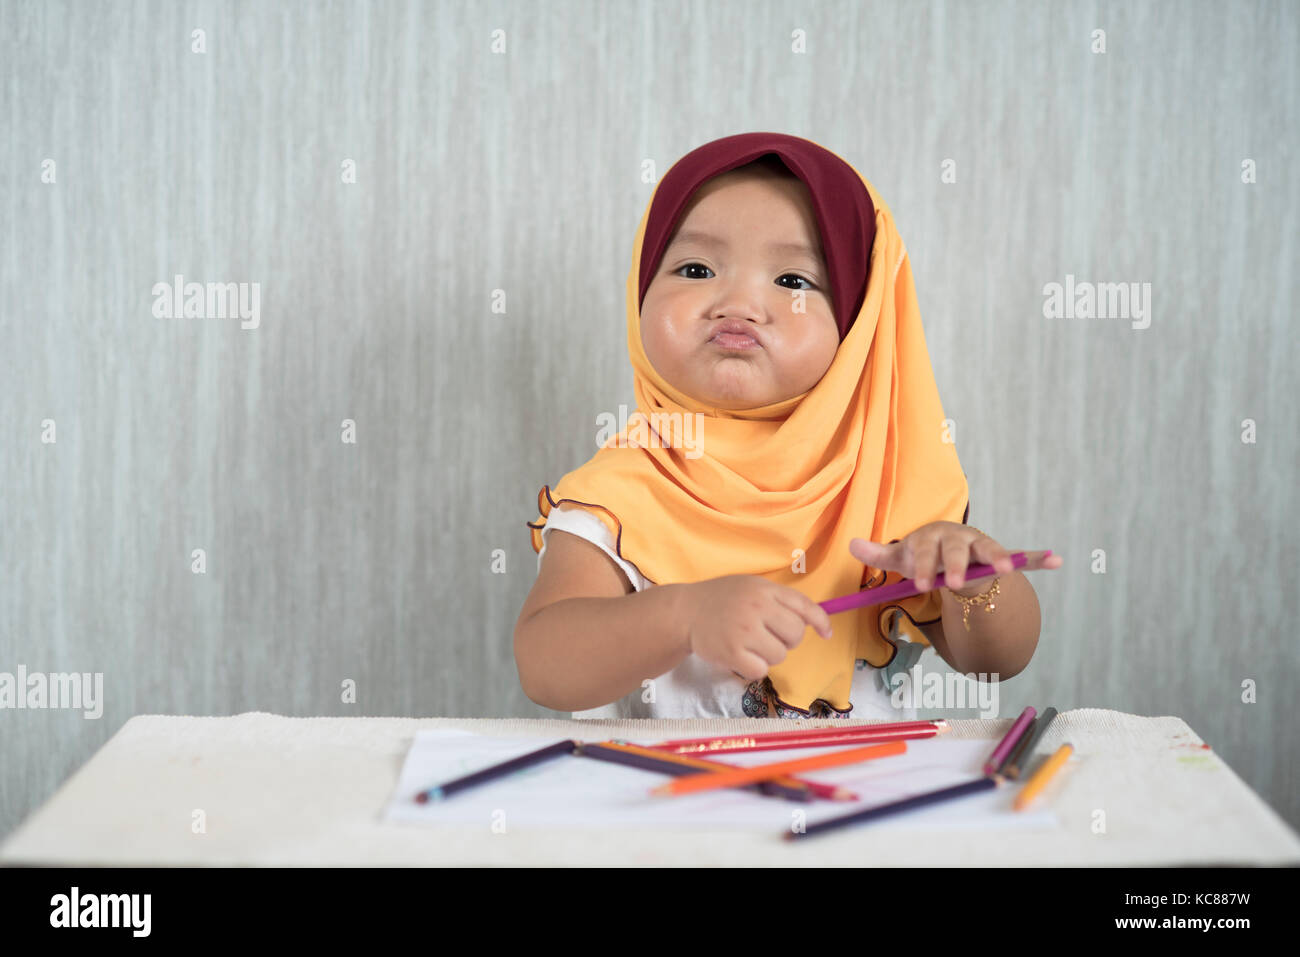 Tout-petits ASIE / baby girl wearing hijab est d'avoir plaisir à apprendre à utiliser des crayons tout en drôle de visage. L'éducation concept. smiling bébé / enfant Banque D'Images